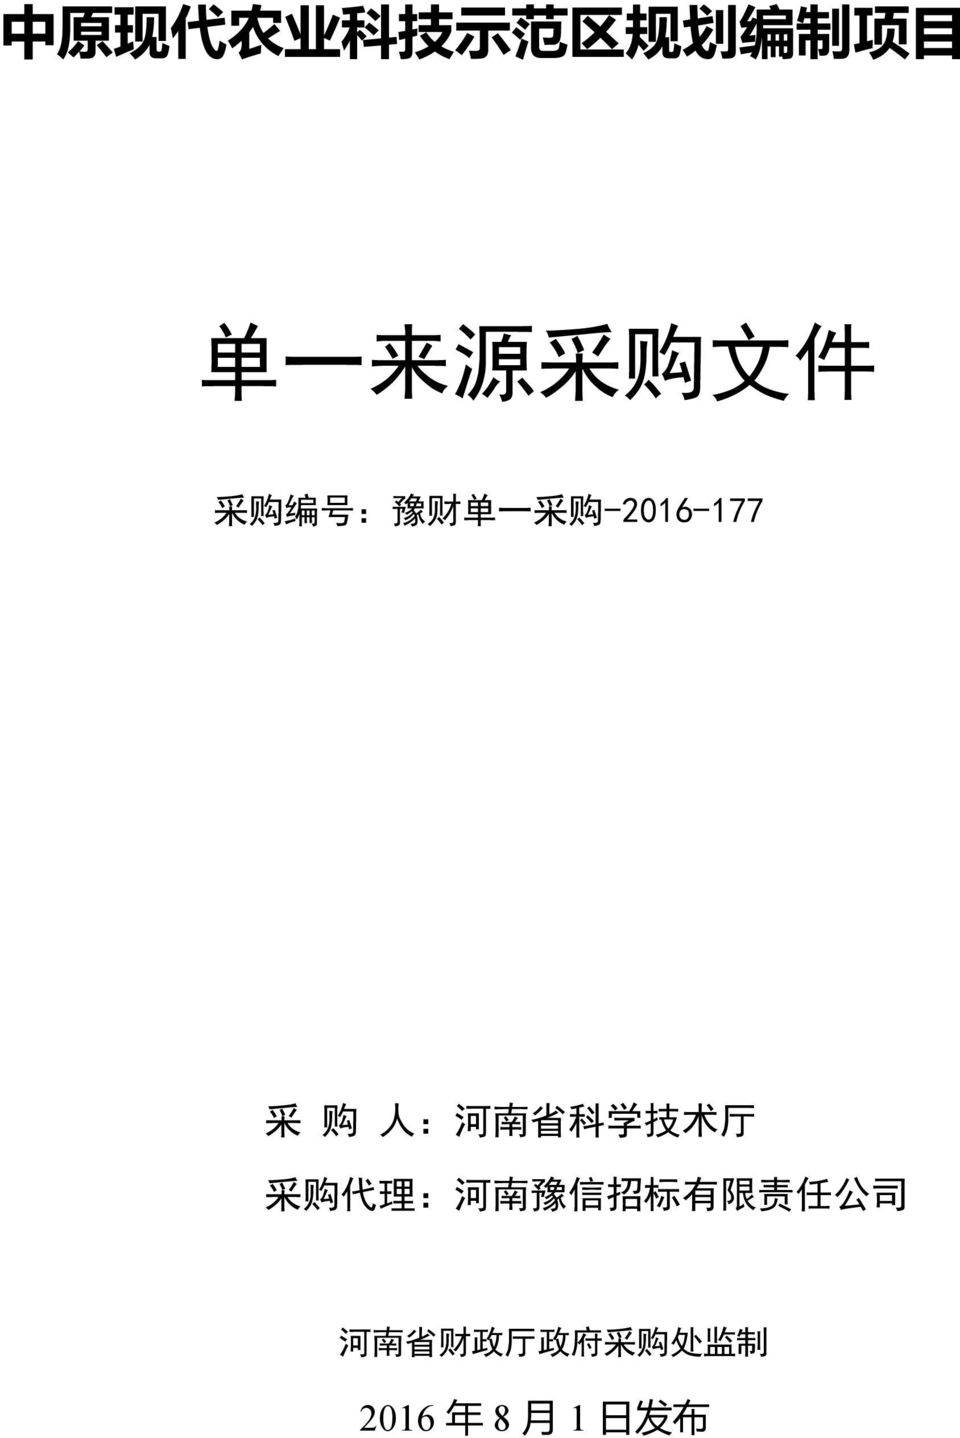 南 省 科 学 技 术 厅 采 购 代 理 : 河 南 豫 信 招 标 有 限 责 任 公